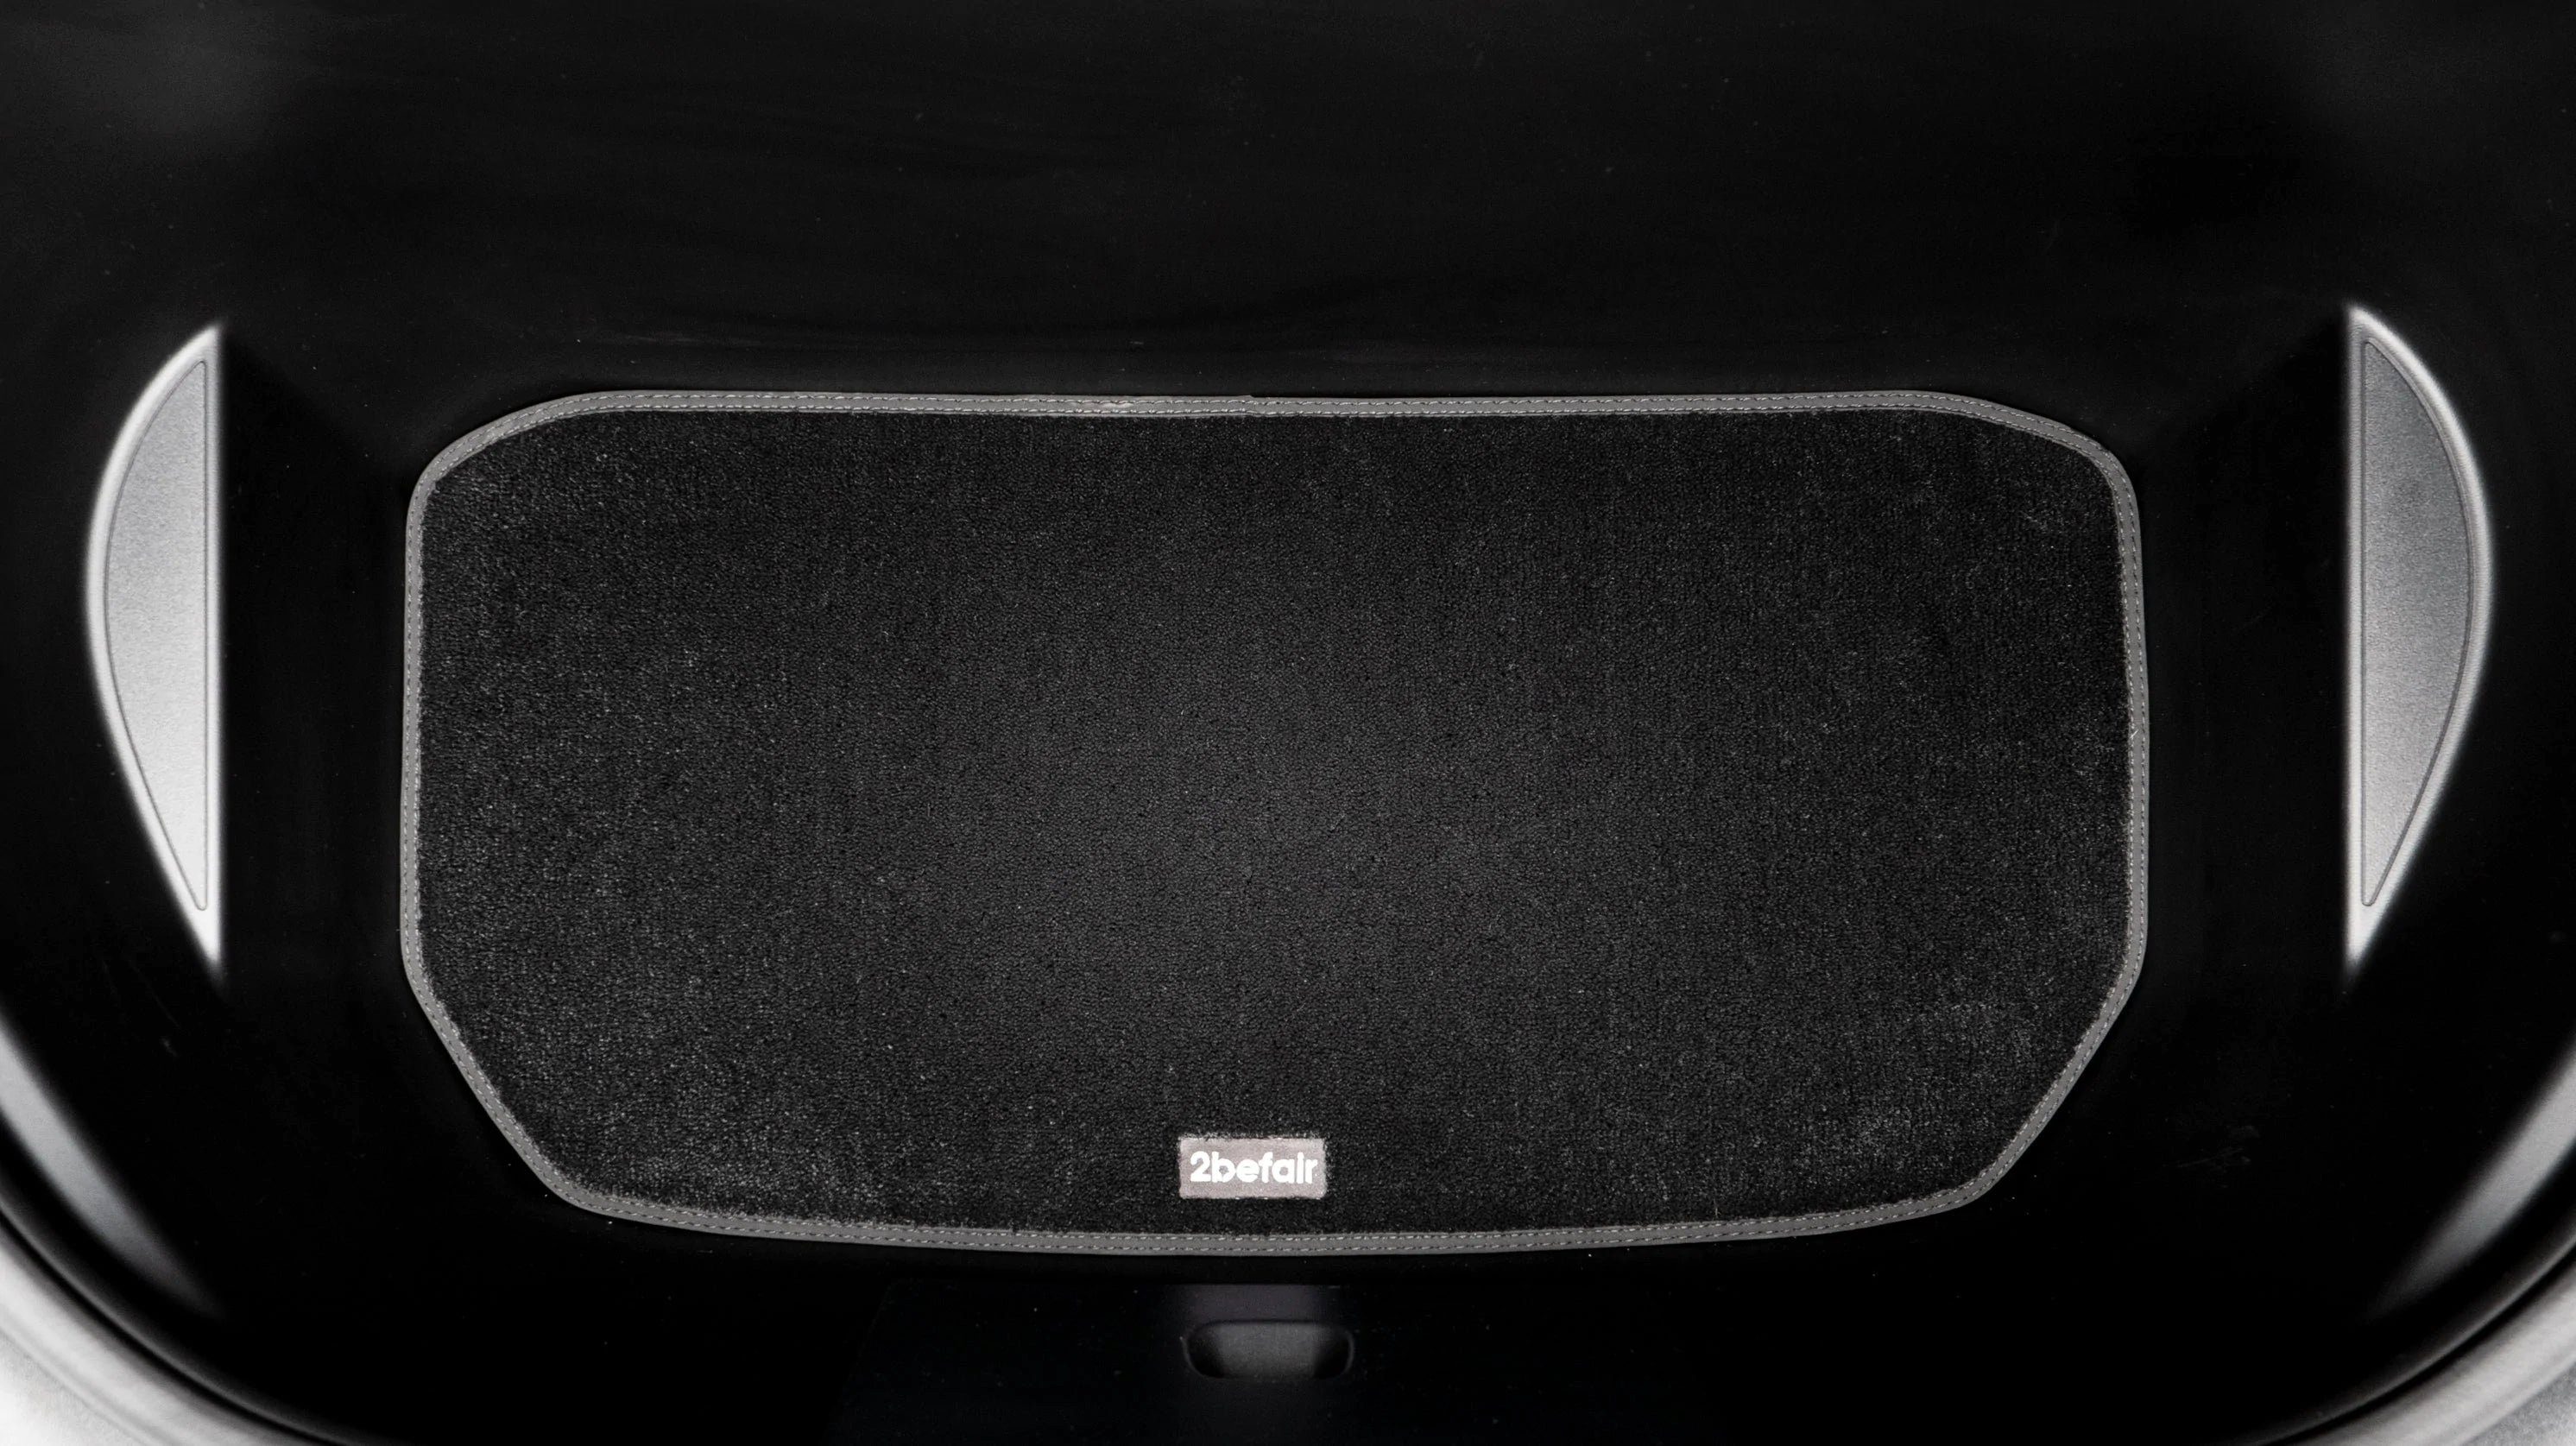 für für Model, Set das Tesla Tesla Teppichmatten 2befair Kofferraum Auto-Fußmatten